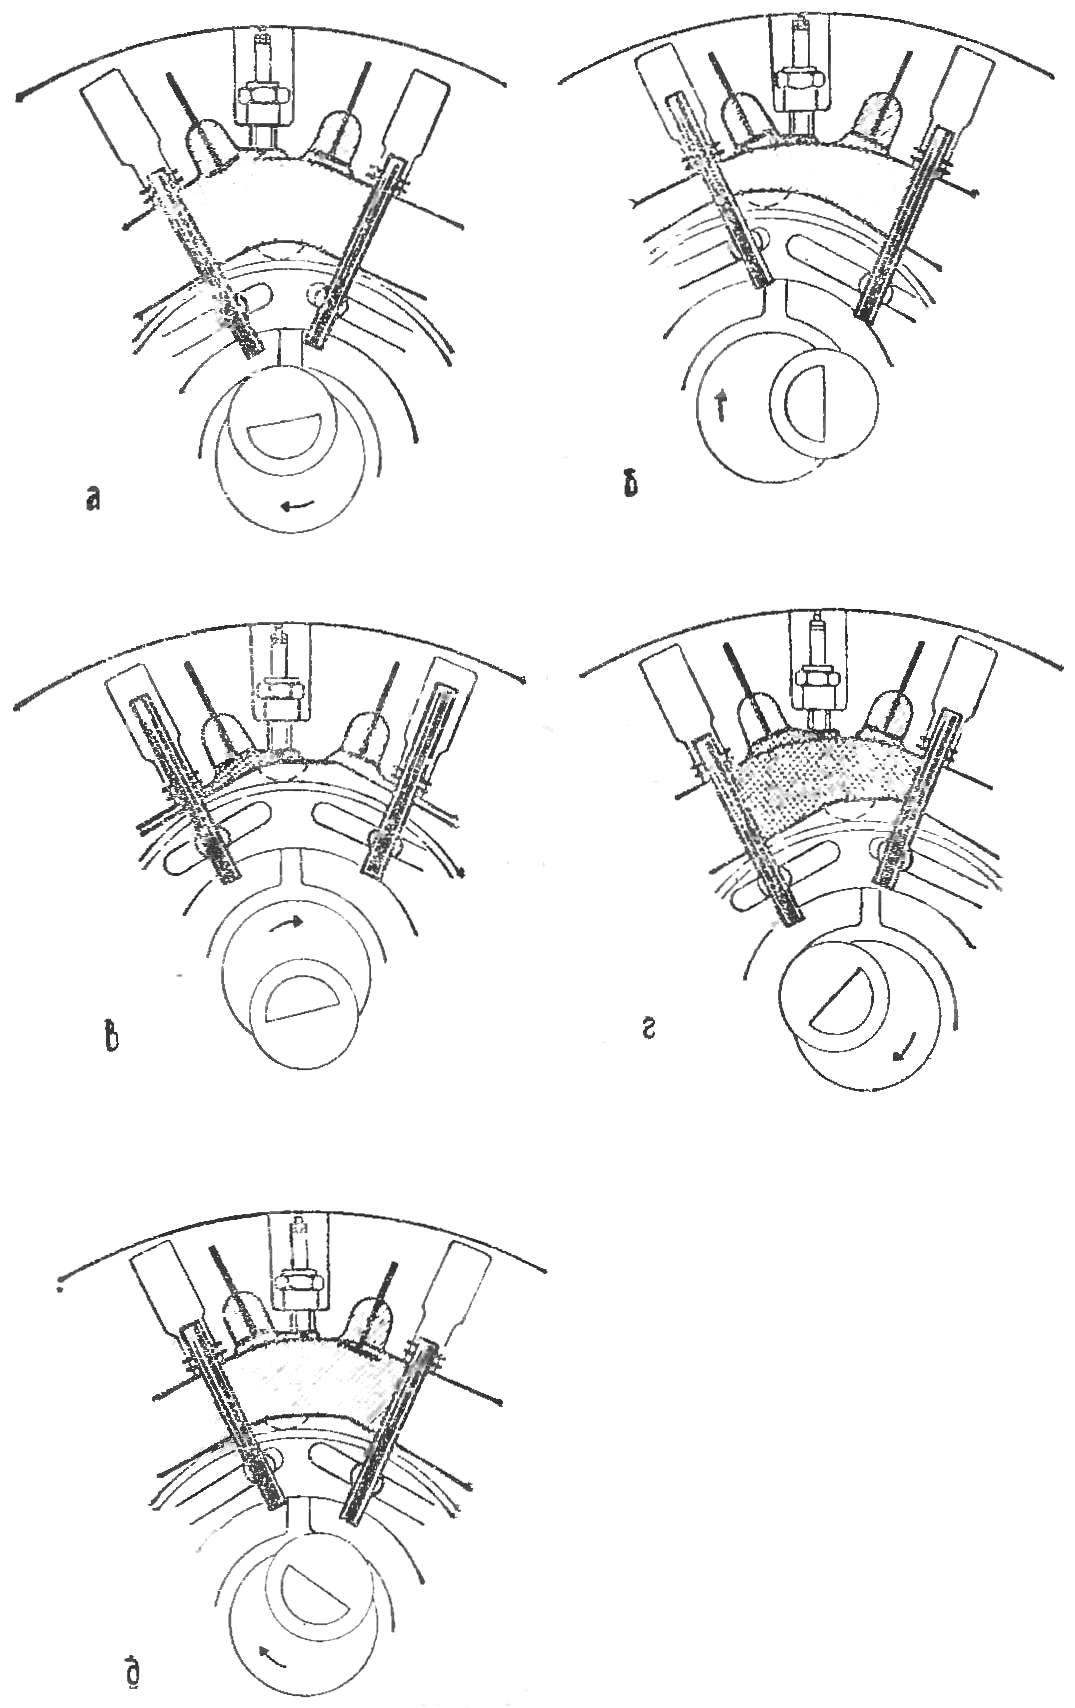 Fig. 3. Diagram of engine Sarica